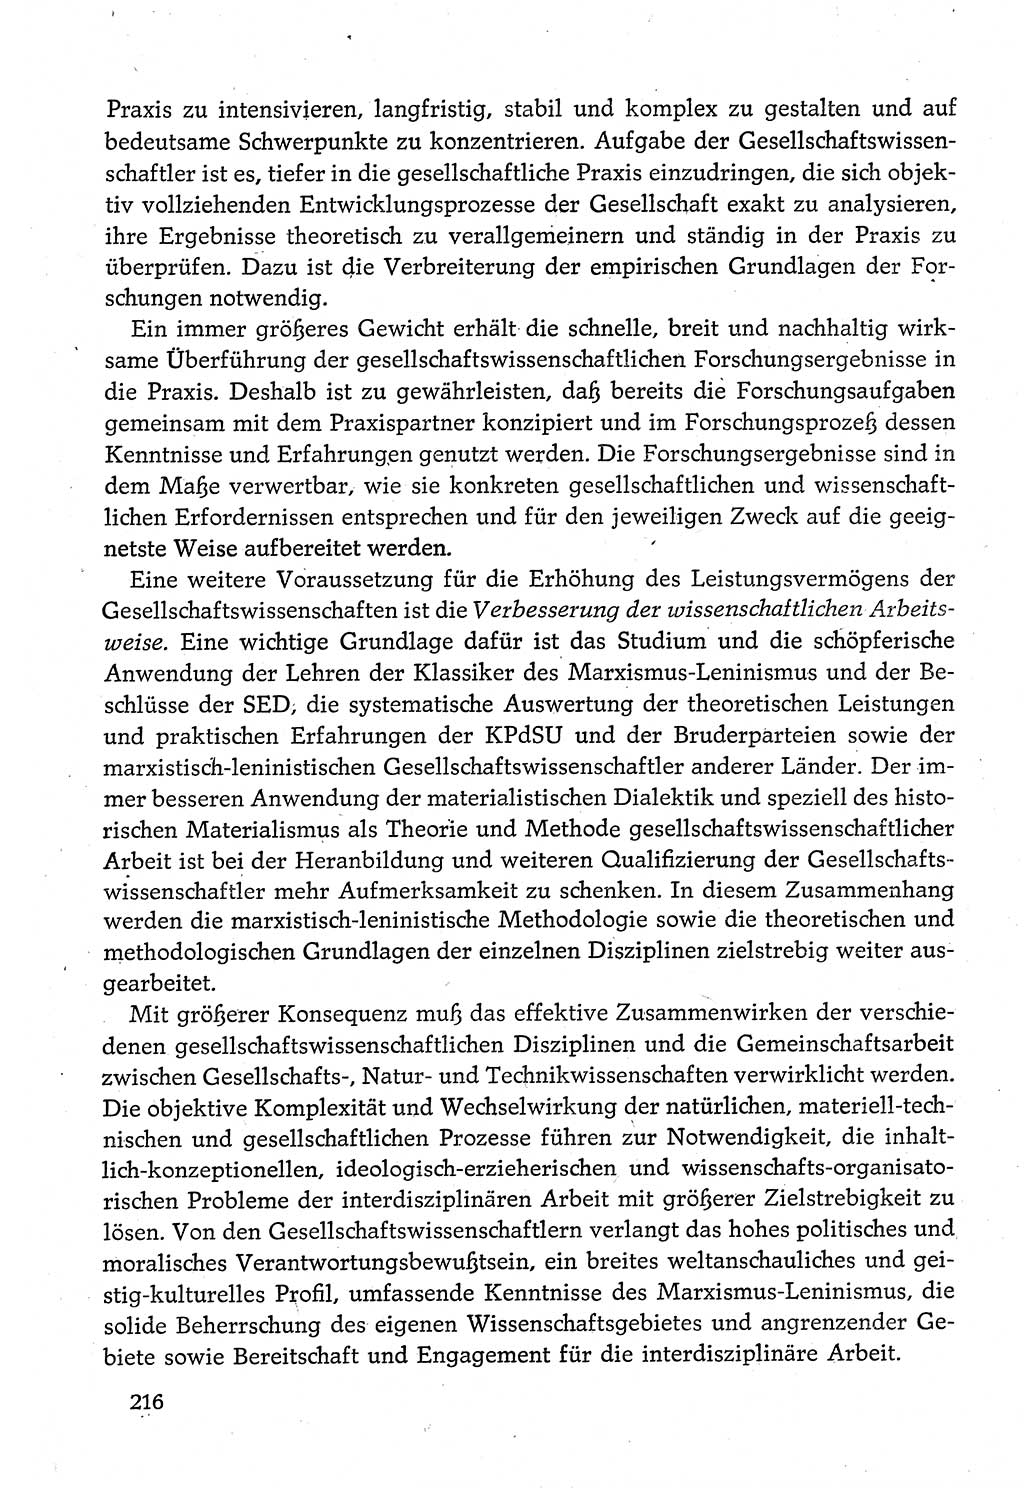 Dokumente der Sozialistischen Einheitspartei Deutschlands (SED) [Deutsche Demokratische Republik (DDR)] 1980-1981, Seite 216 (Dok. SED DDR 1980-1981, S. 216)